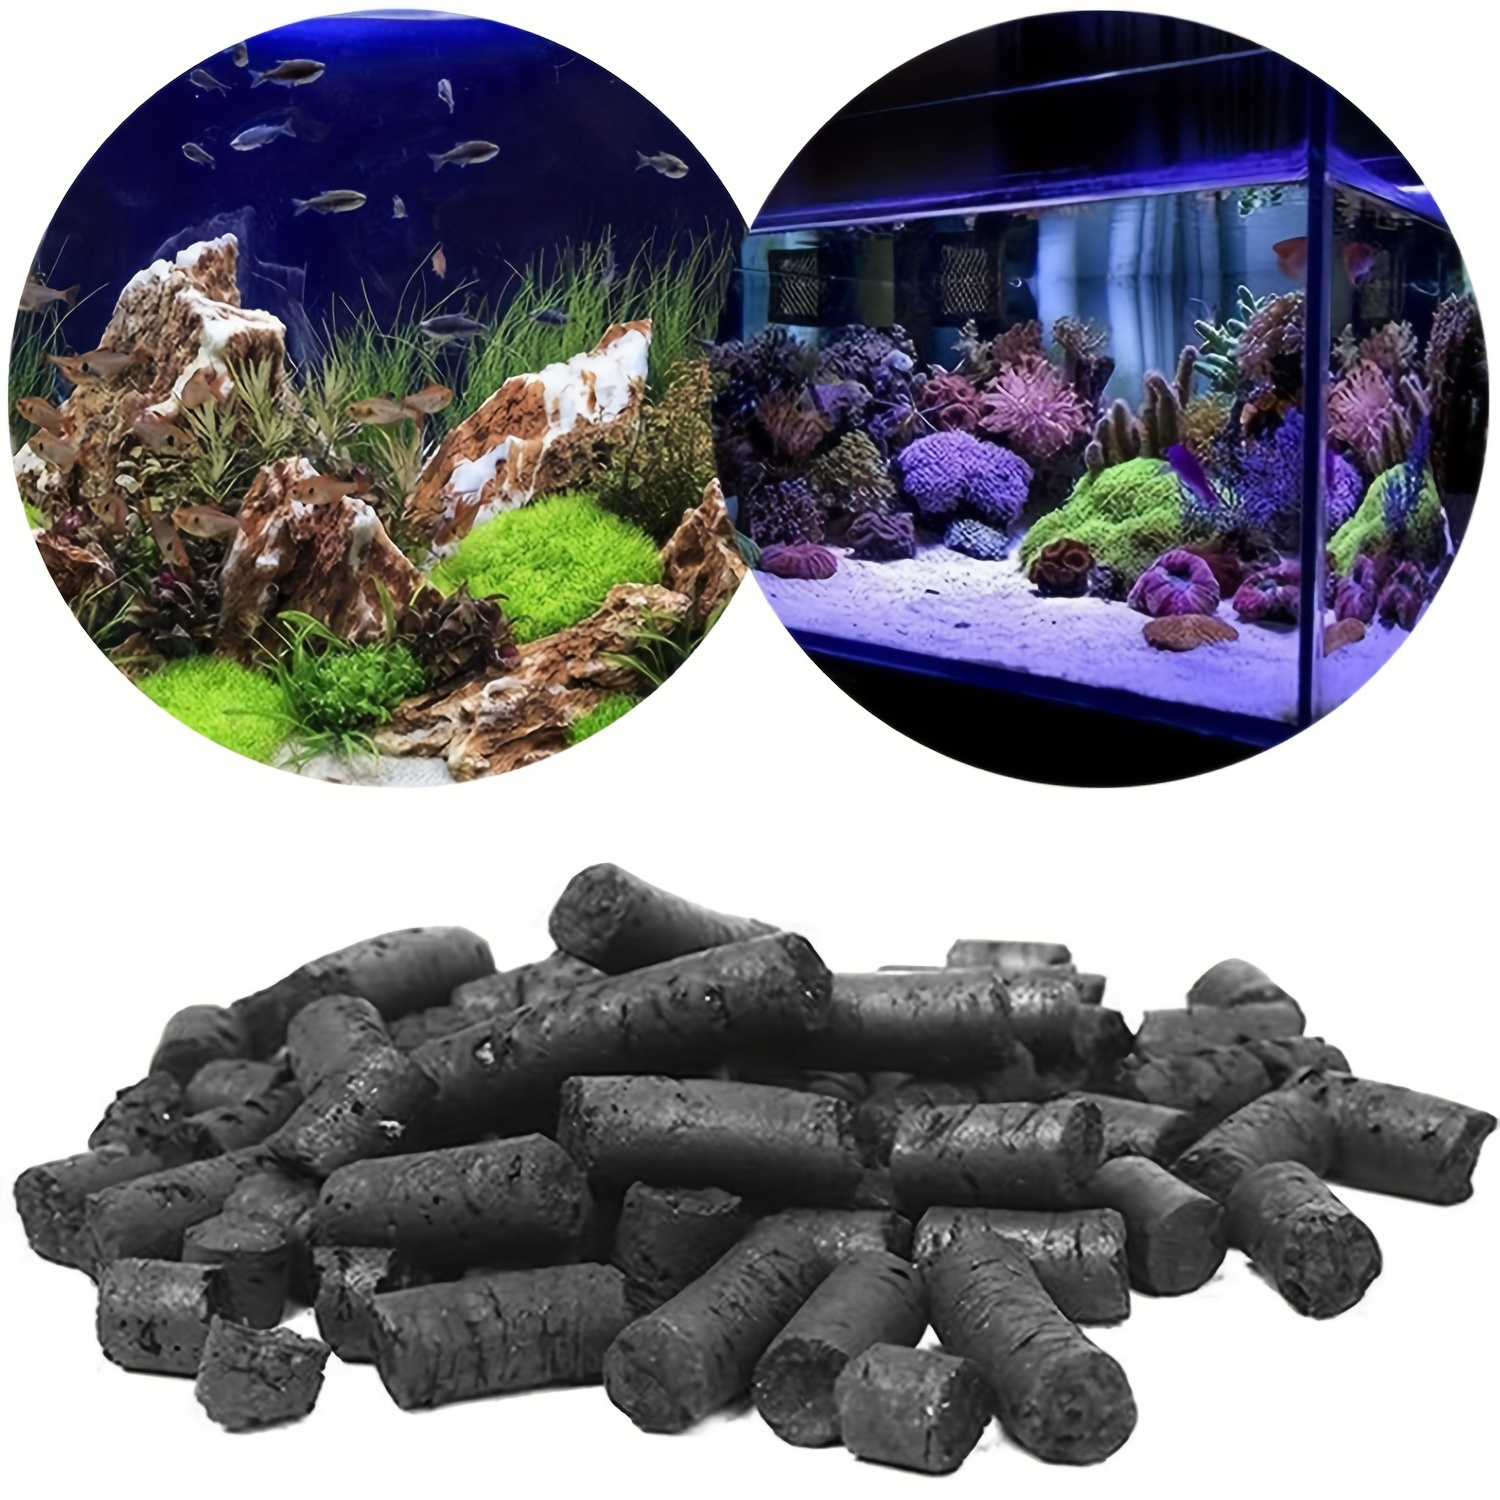 6 lbs Bulk Carbon Charcoal Filter Media Pellets for Aquarium Fish Tanks